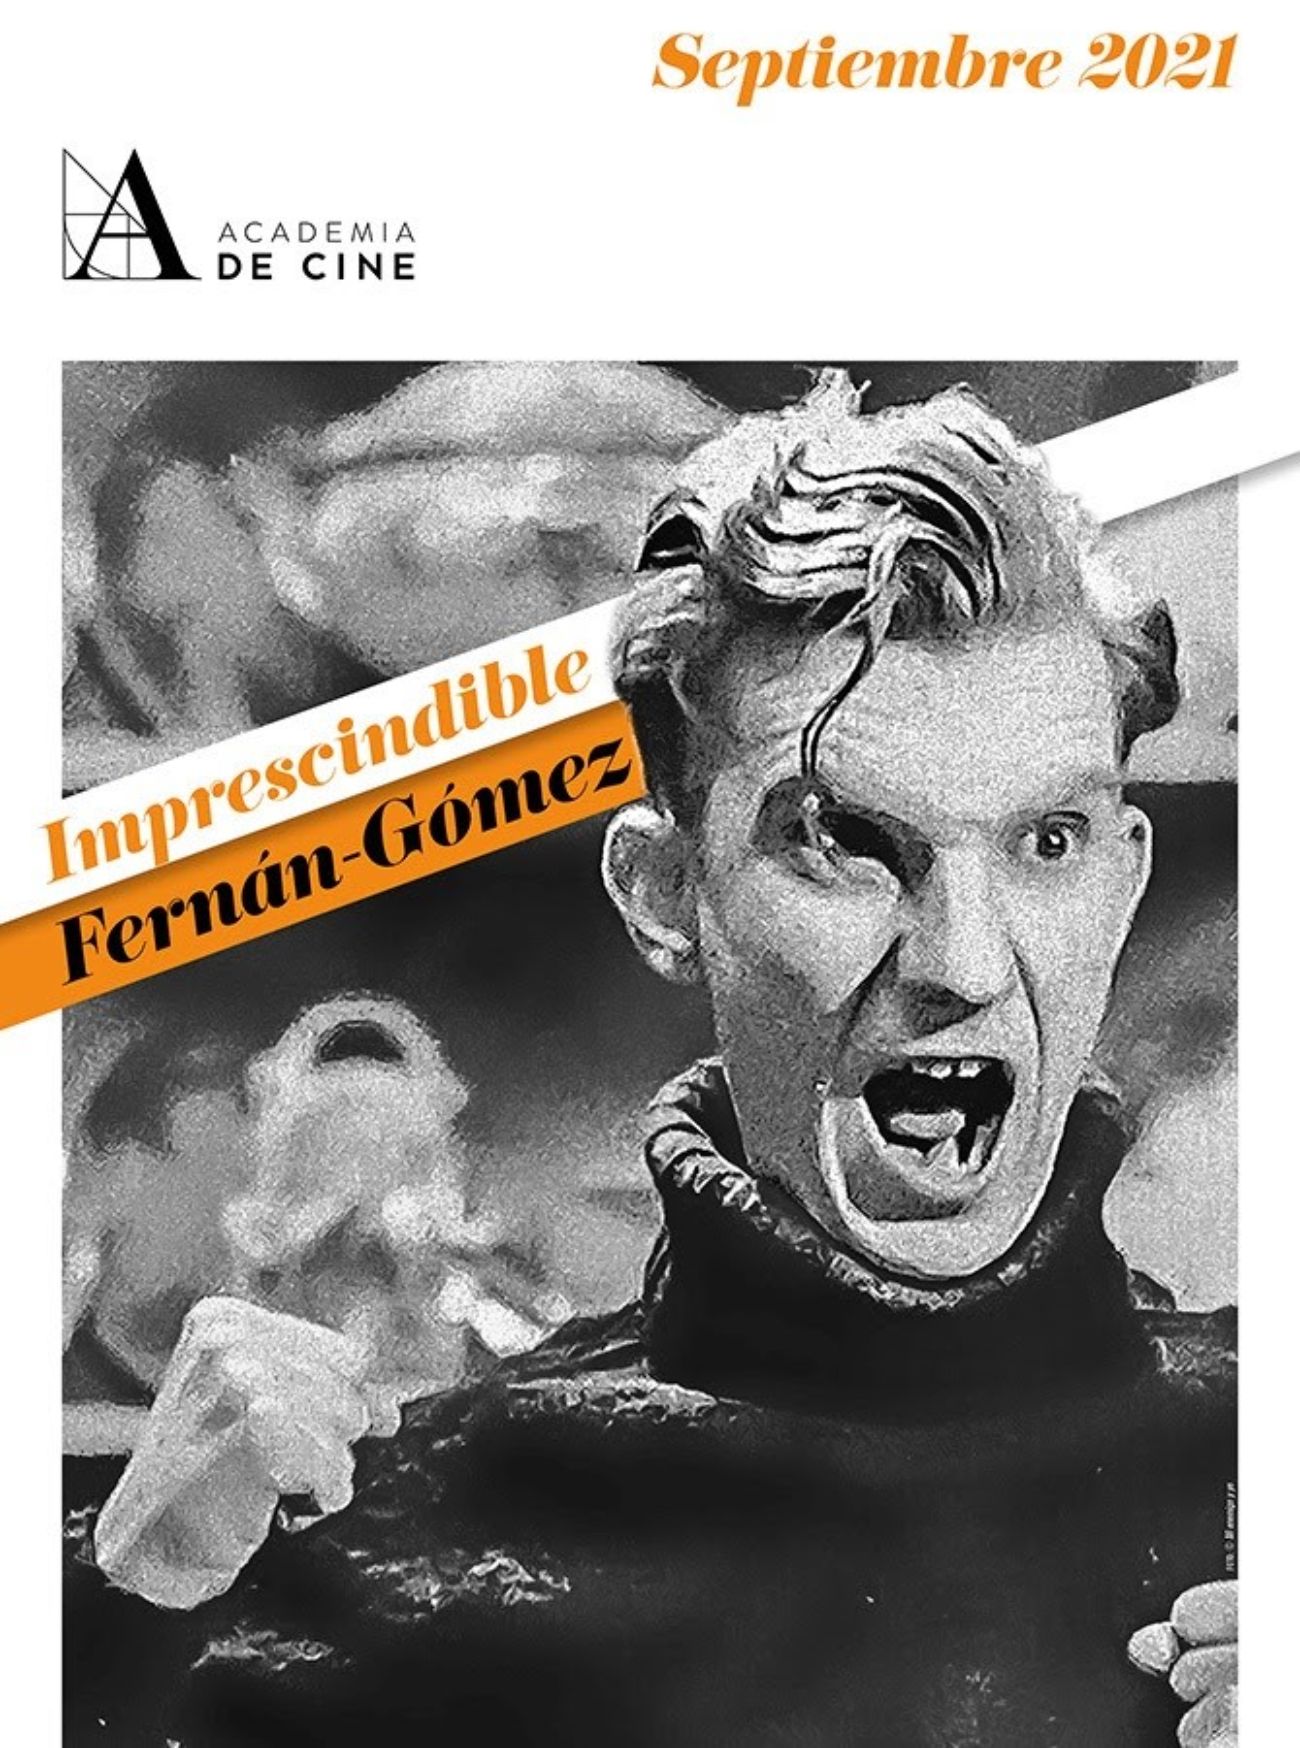 La Academia de Cine conmemora el centenario de Fernán-Gómez con un ciclo de sus películas. Foto: Europa Press